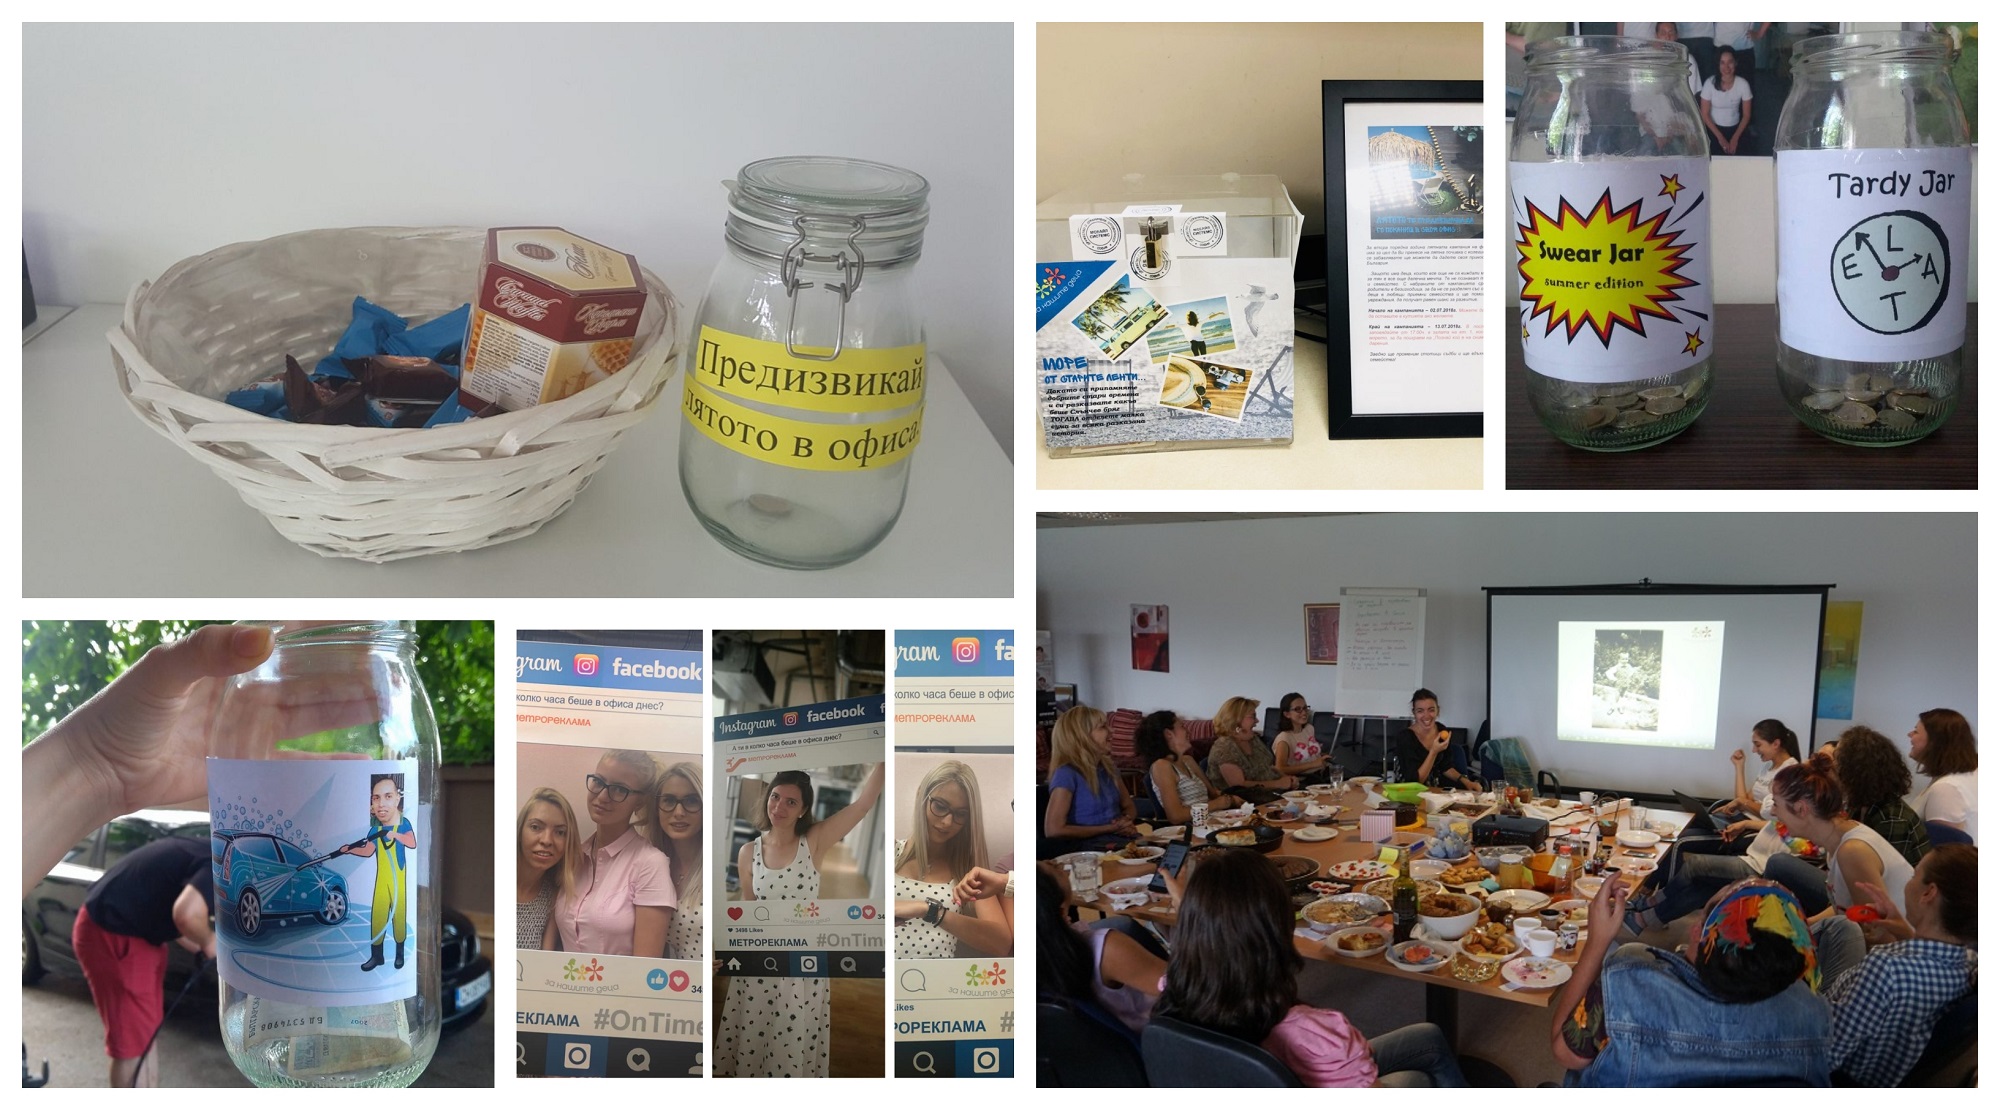 Над 4500 лв. набра второто издание на лятната кампания на фондация „За Нашите Деца” „Предизвикай лятото в офиса“